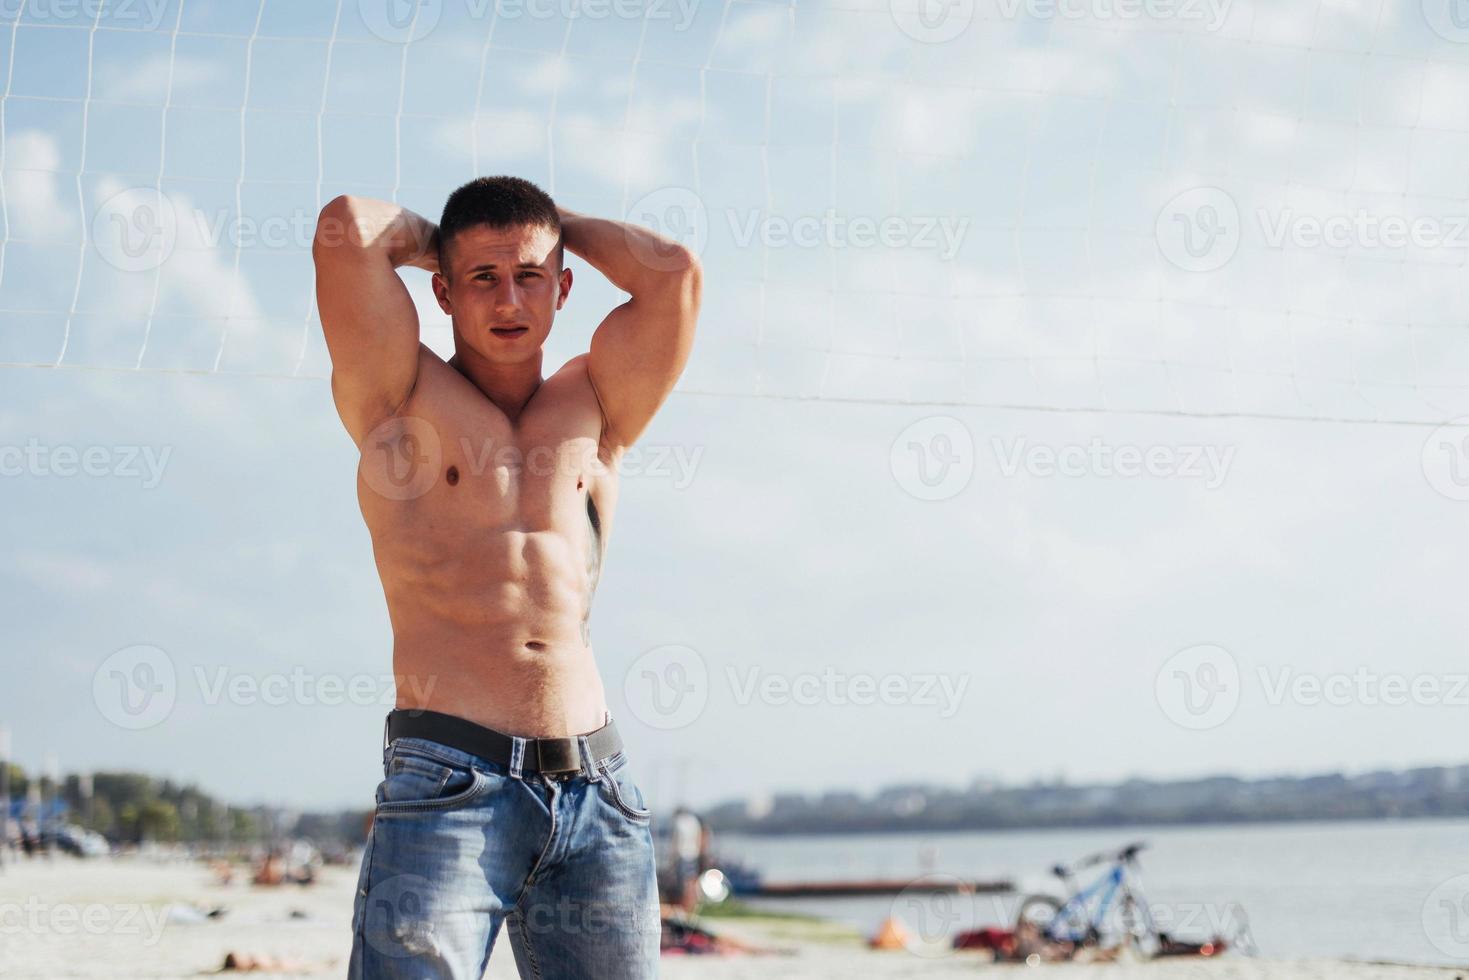 modèle masculin musclé avec un corps parfait posant en jeans photo